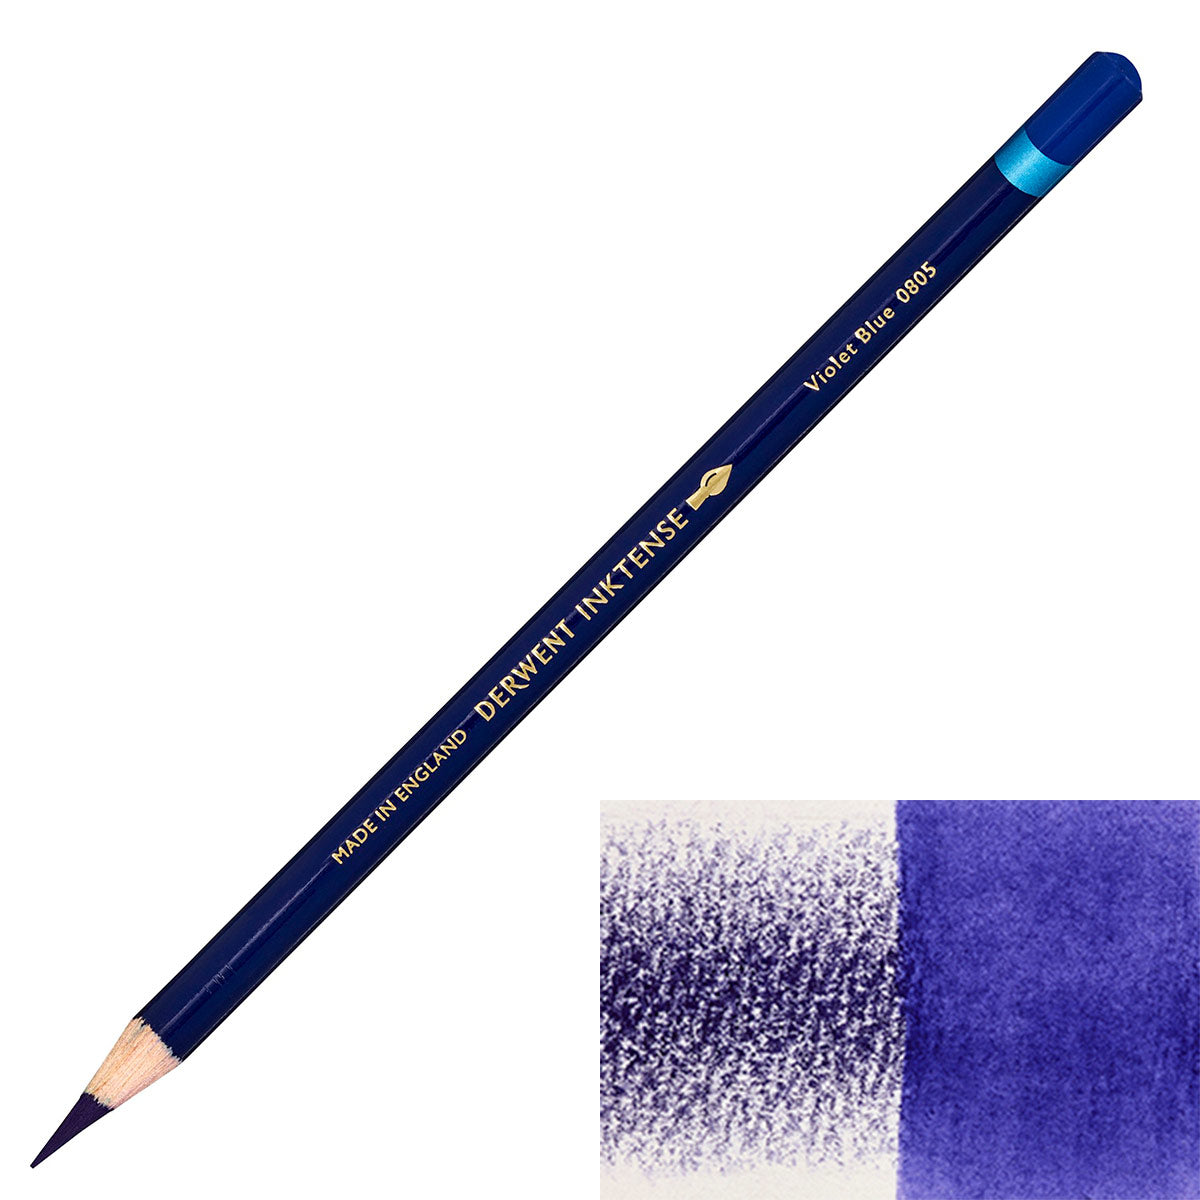 Derwent - Inktense Pencil - Violet Blue 0805